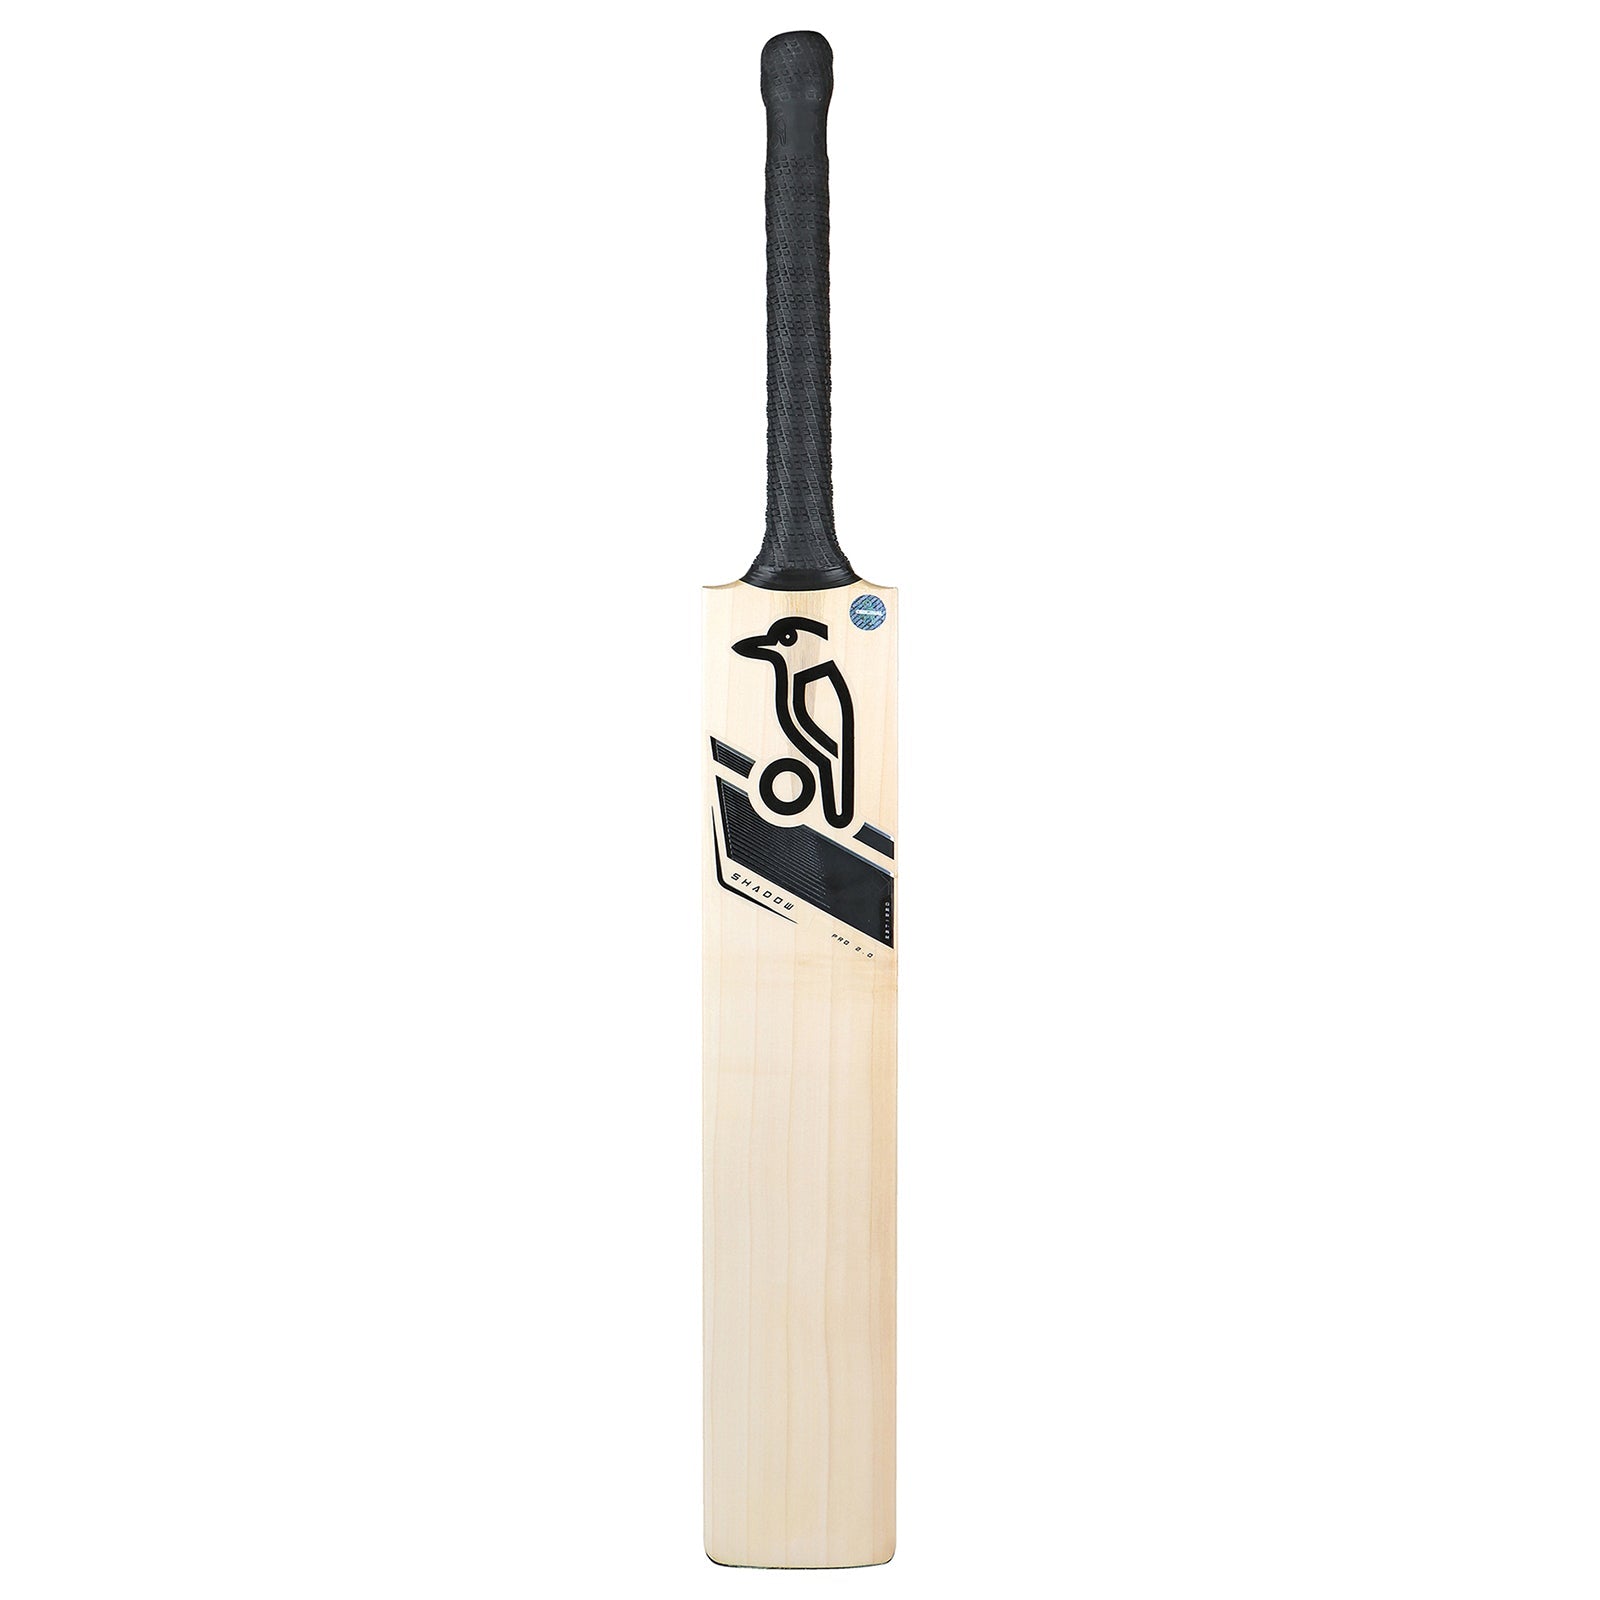 Kookaburra Shadow Pro 2.0 Cricket Bat - Senior Long Blade